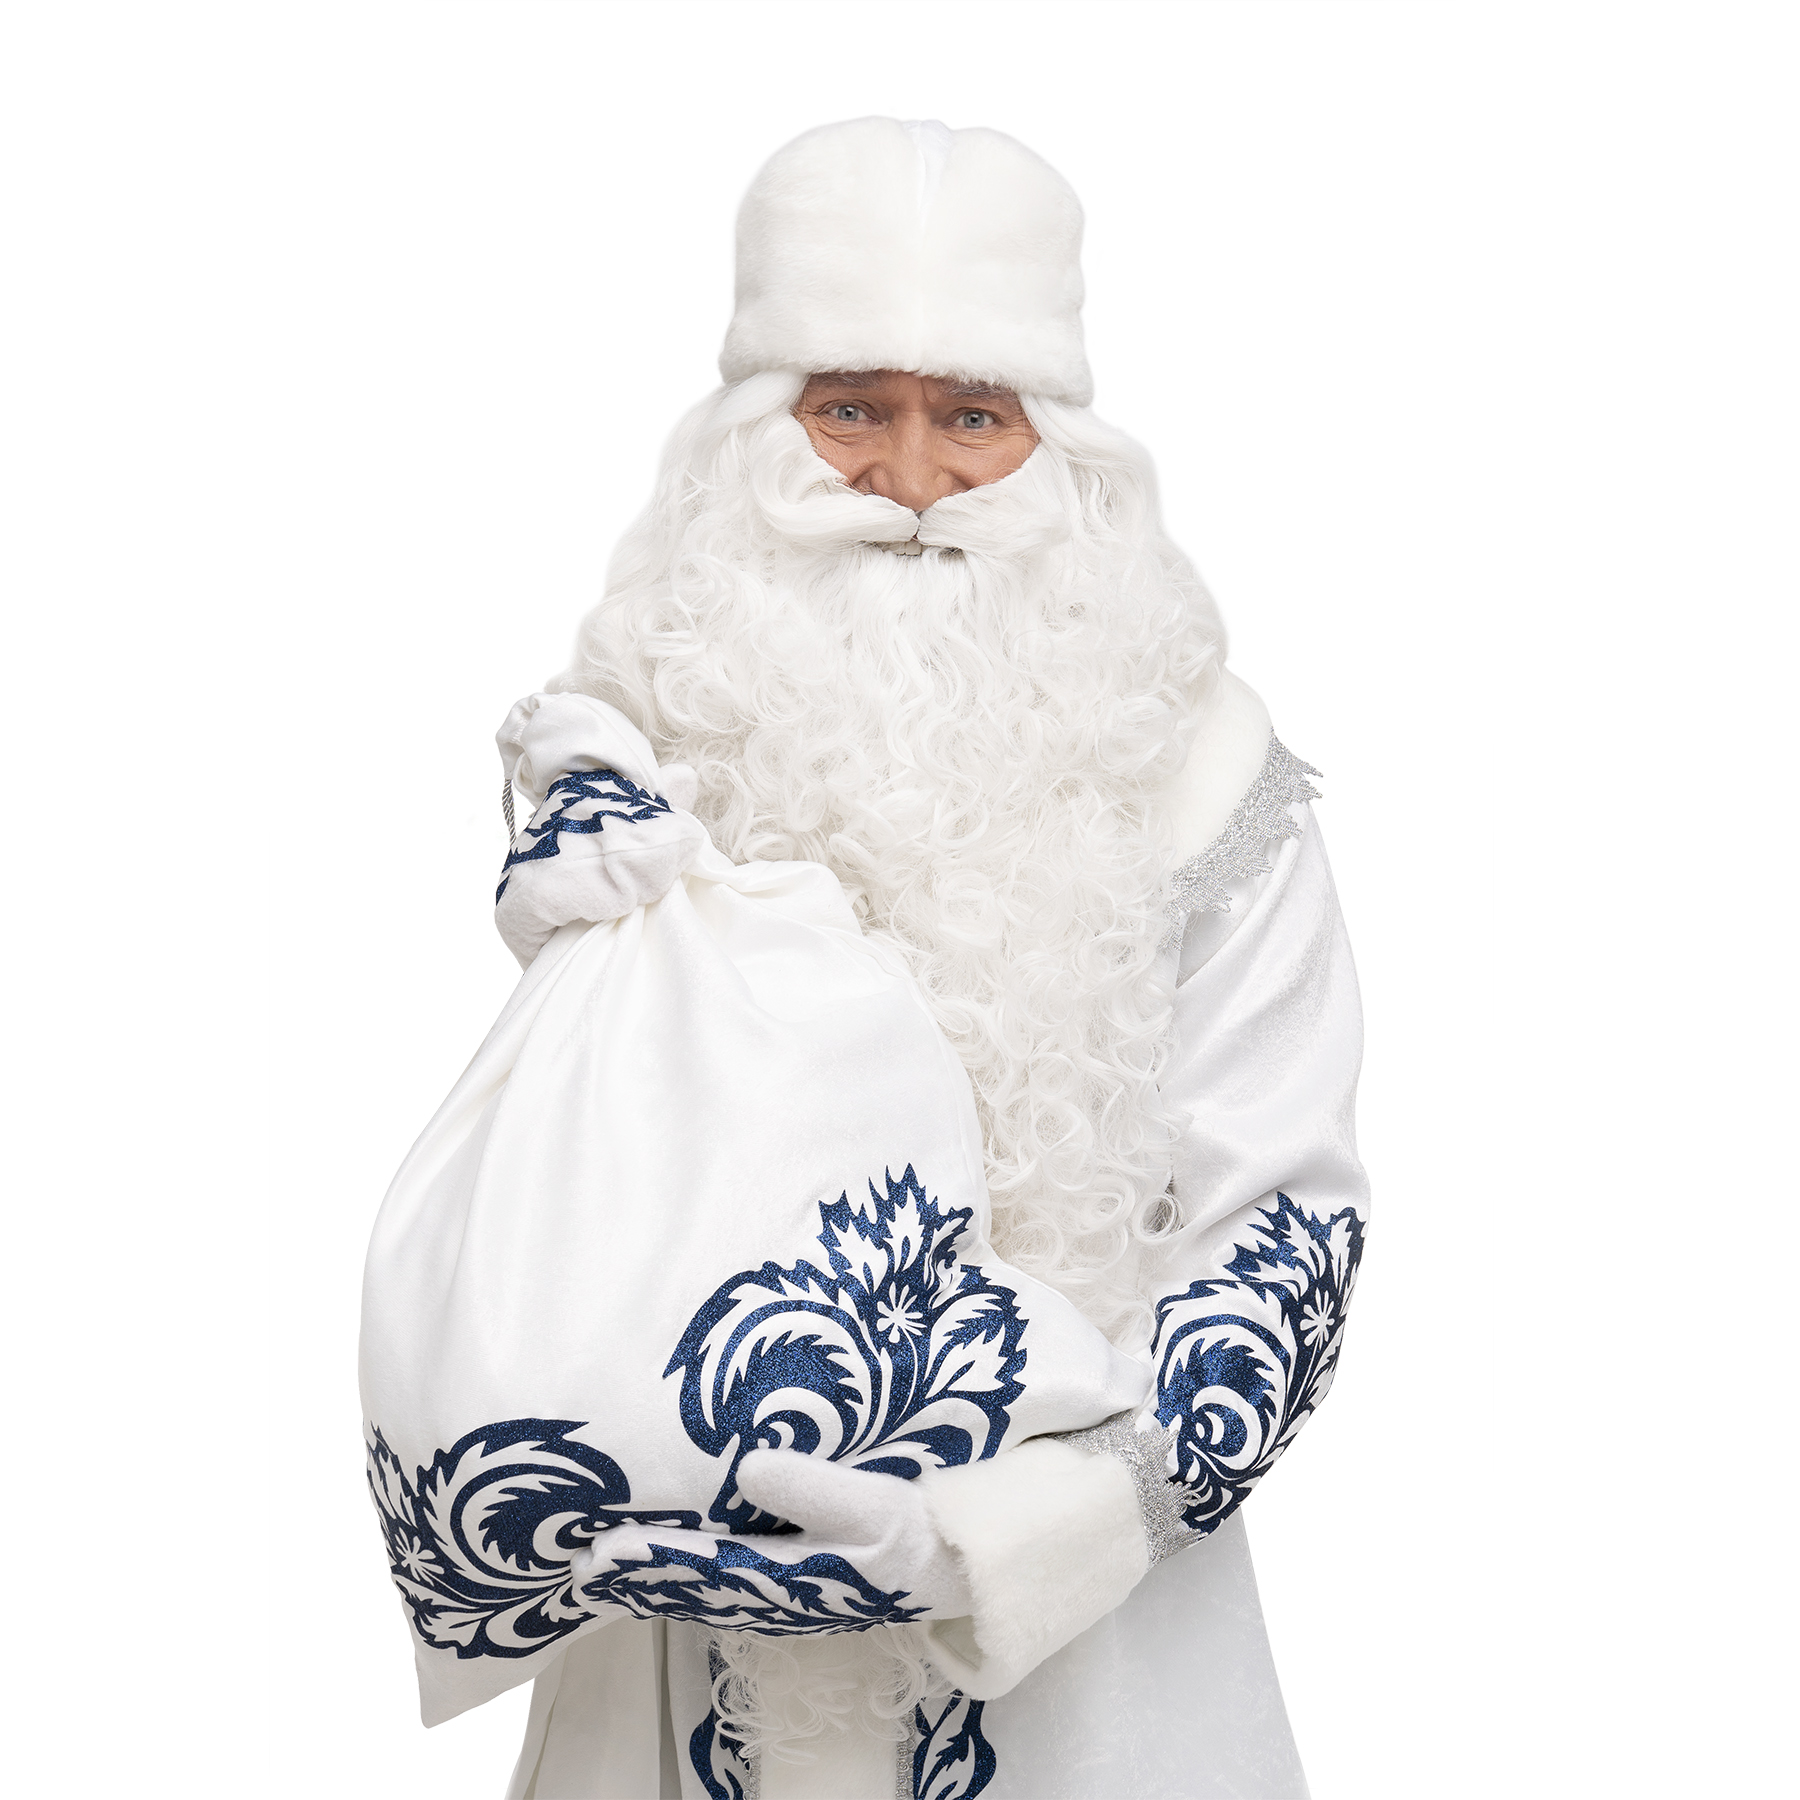 Santa Claus Costume North